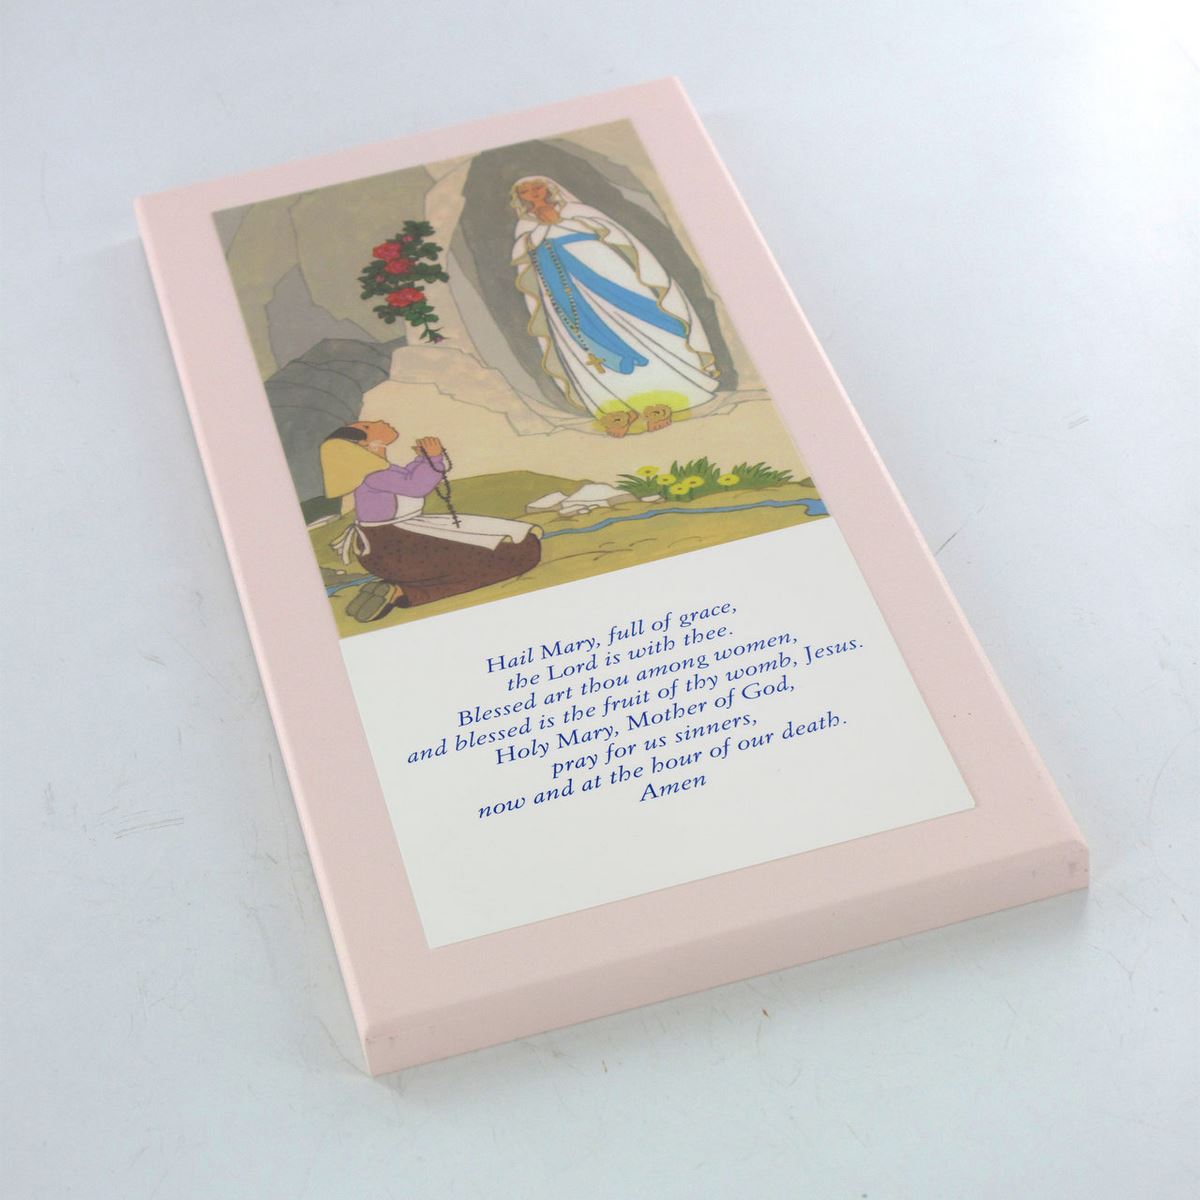 tavola lourdes con preghiera ave maria in inglese su legno rosa - 26 x 12,5 cm   